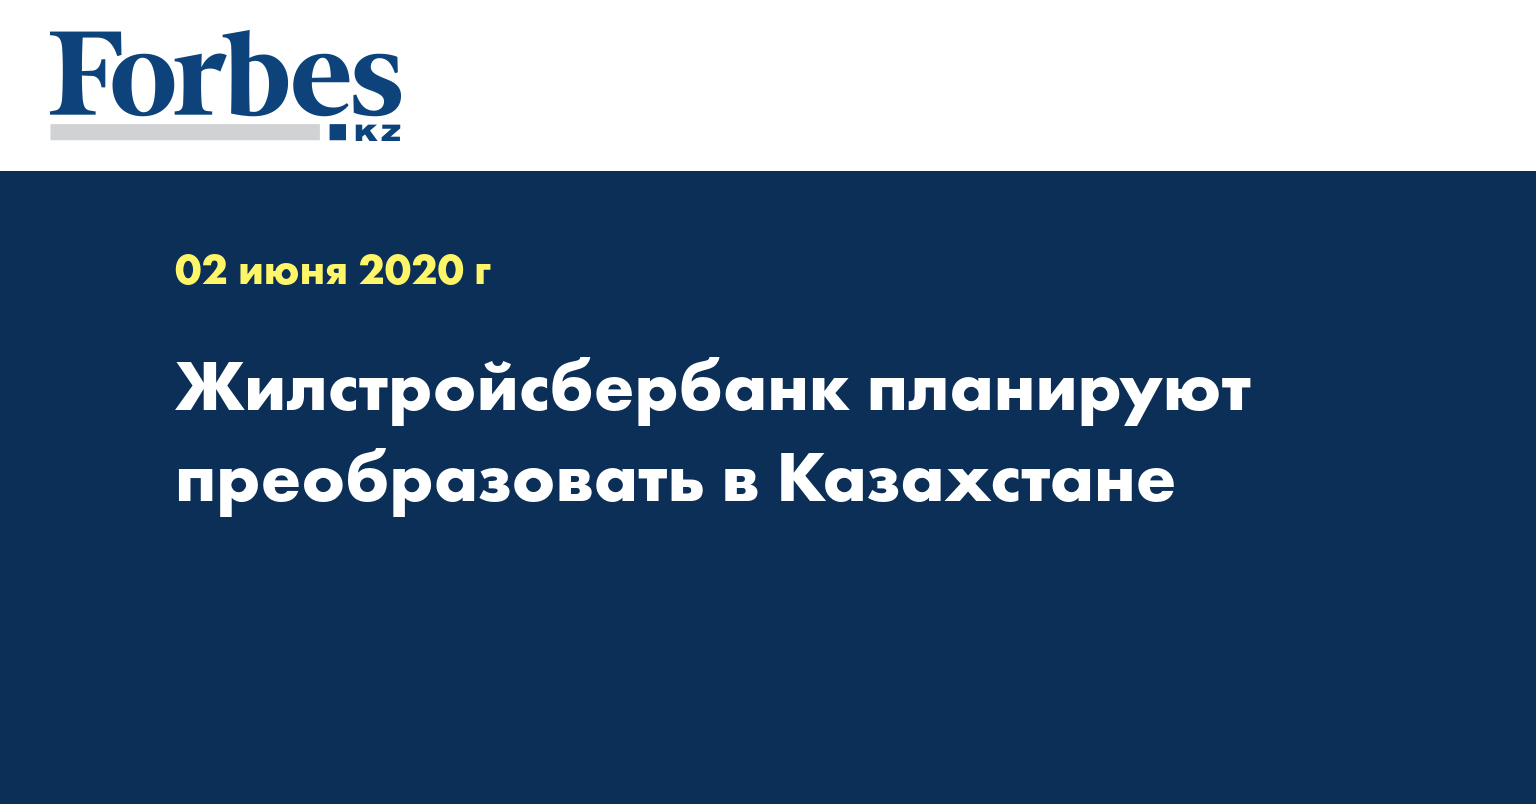  Жилстройсбербанк планируют преобразовать в Казахстане